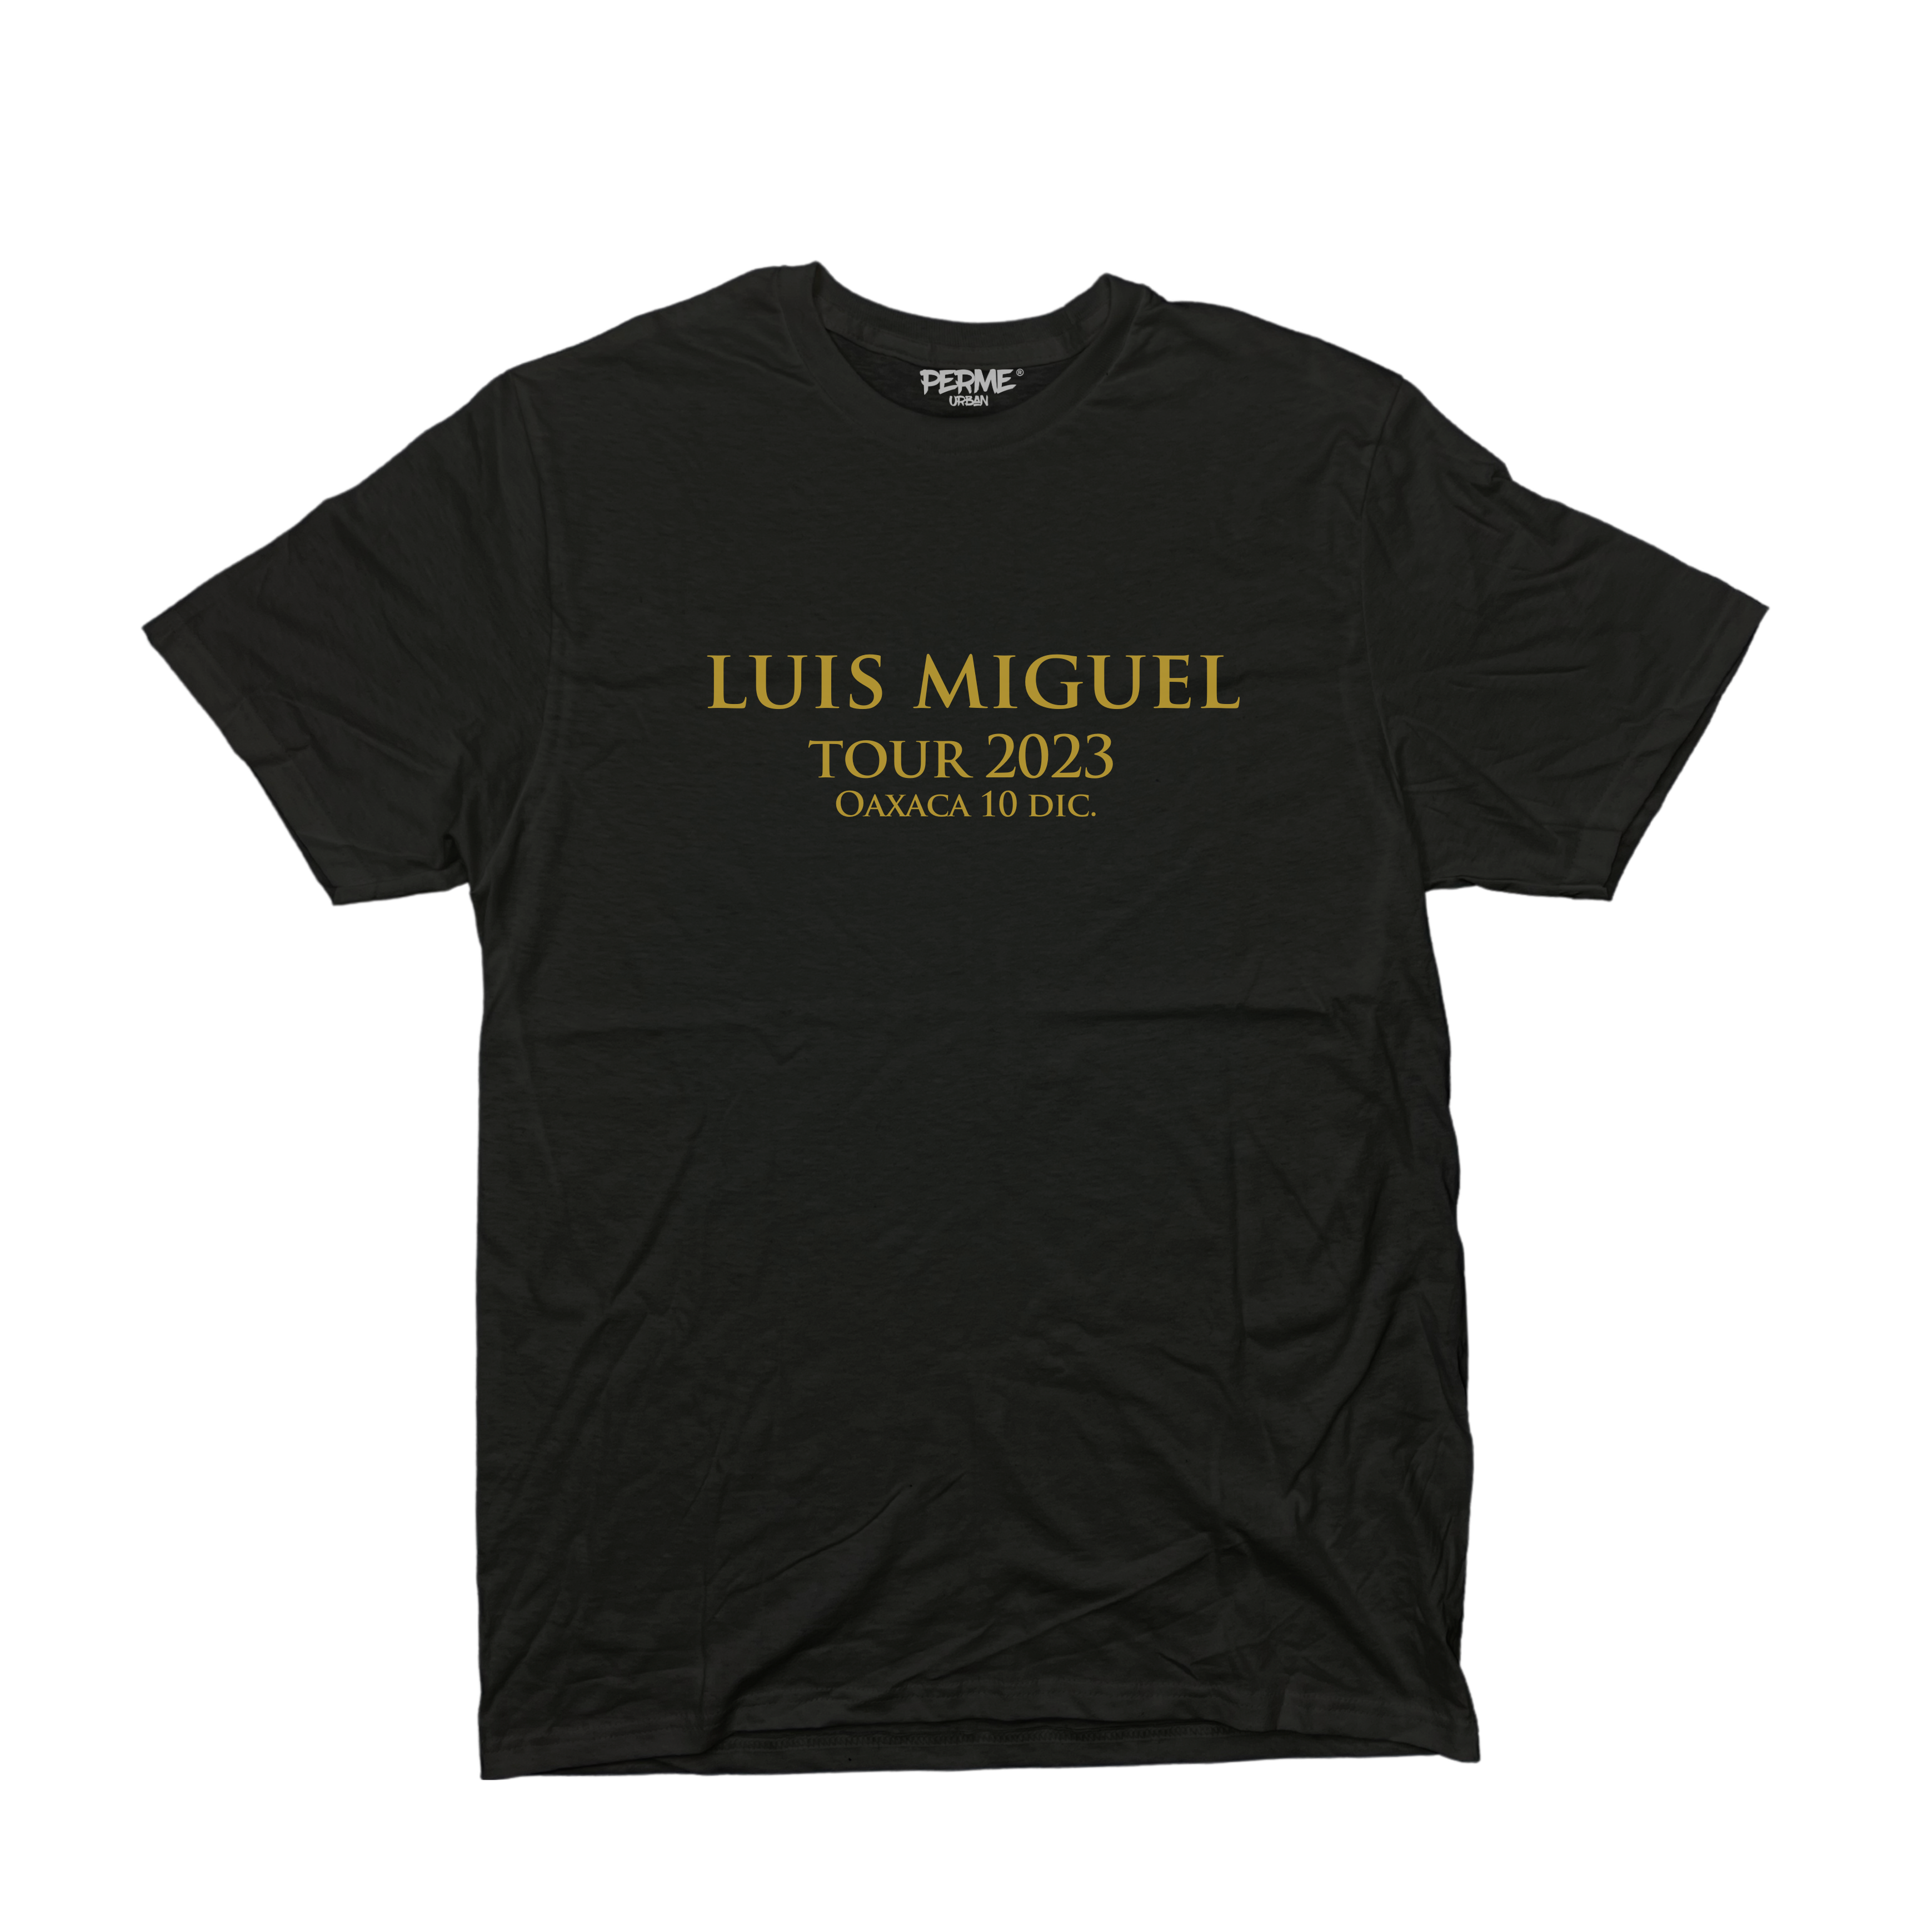 Playera LUIS MIGUEL Tour 2023 PERME URBAN para Dama - Ciudades y Fechas